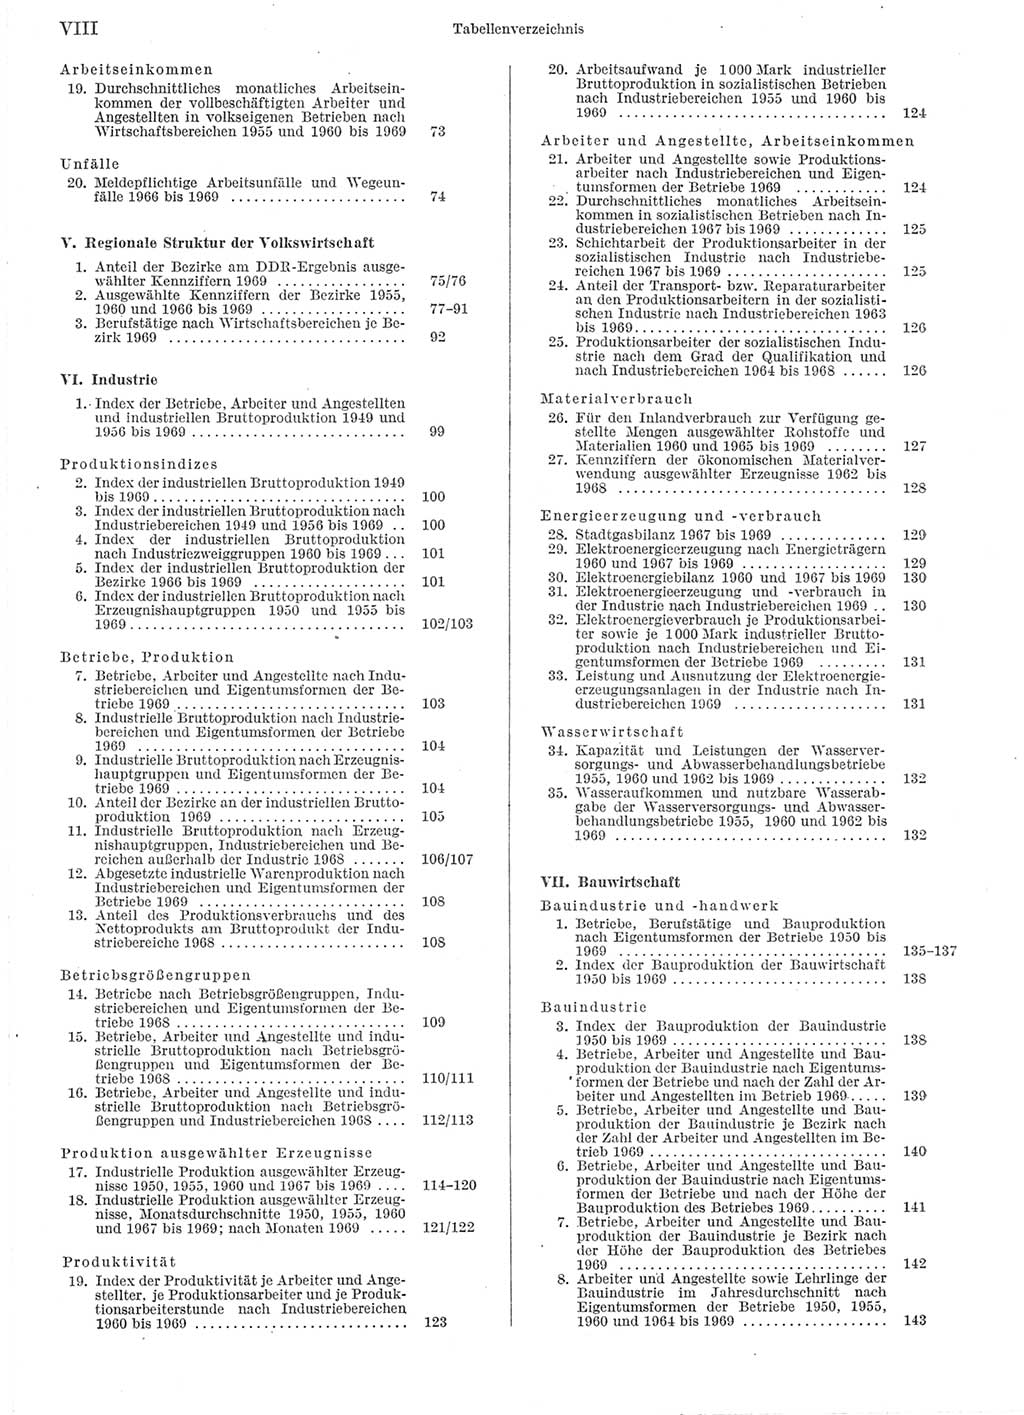 Statistisches Jahrbuch der Deutschen Demokratischen Republik (DDR) 1970, Seite 8 (Stat. Jb. DDR 1970, S. 8)